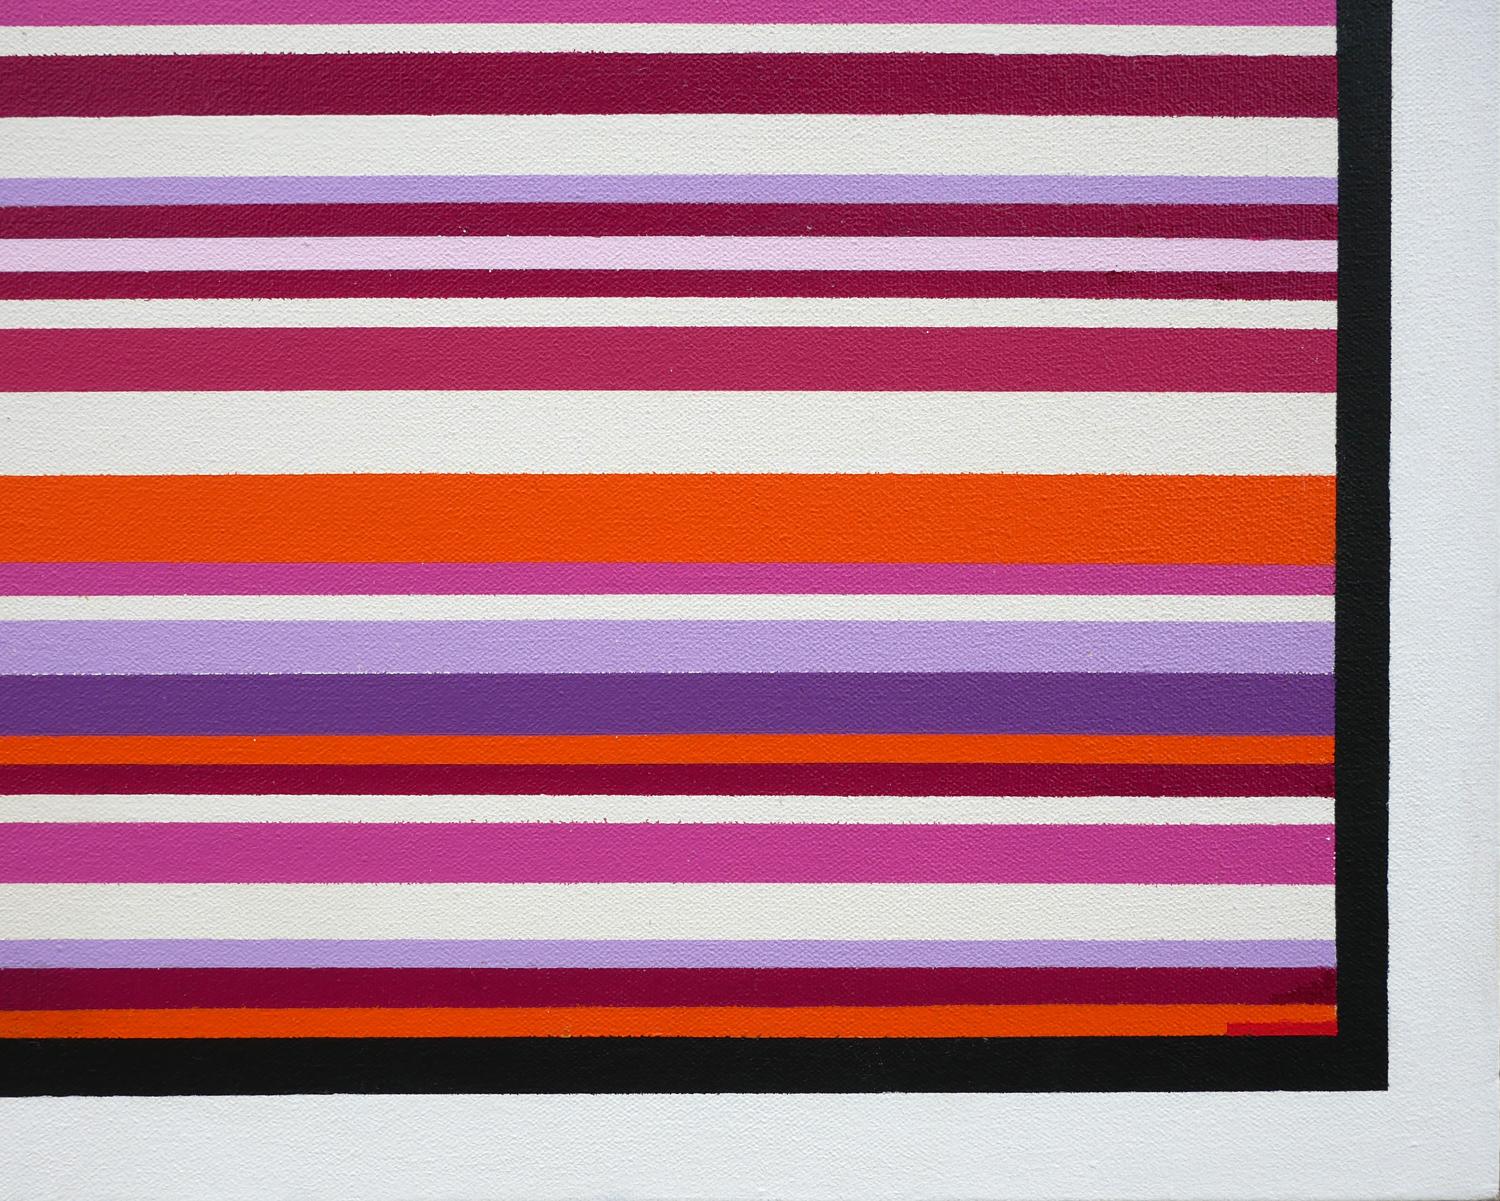 Peinture géométrique abstraite contemporaine de l'artiste Mark Byckowski. La pièce présente des lignes horizontales avec une variété de couleurs vives de bleu, rose et violet peintes sur un fond blanc brillant. Chaque œuvre de Byckowski comporte une